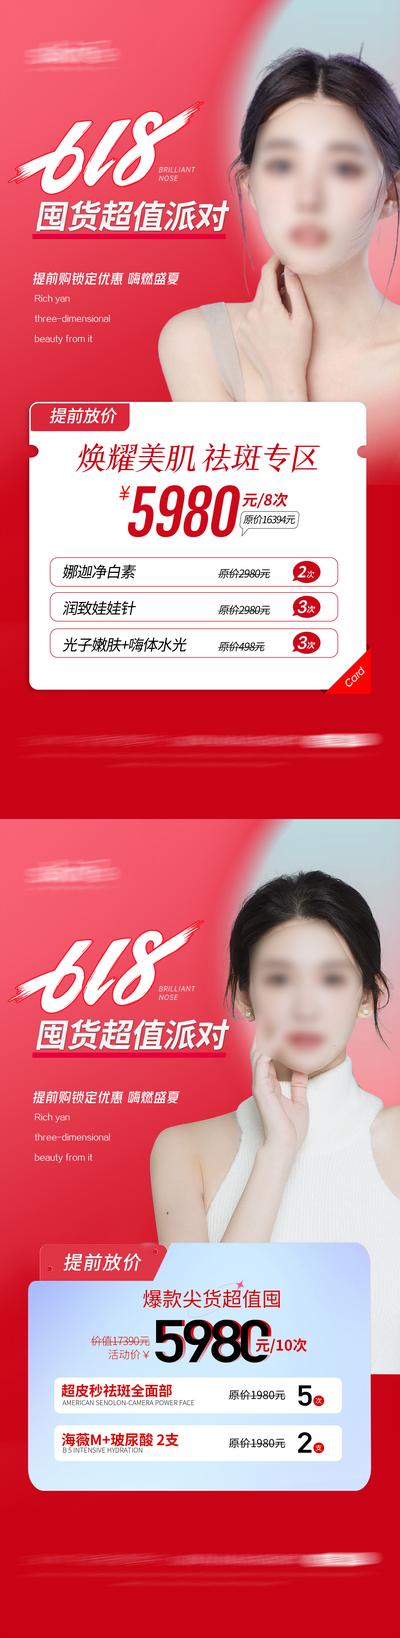 南门网 海报 医美 活动 618 皮肤管理 护肤 美容 促销 卡项 系列